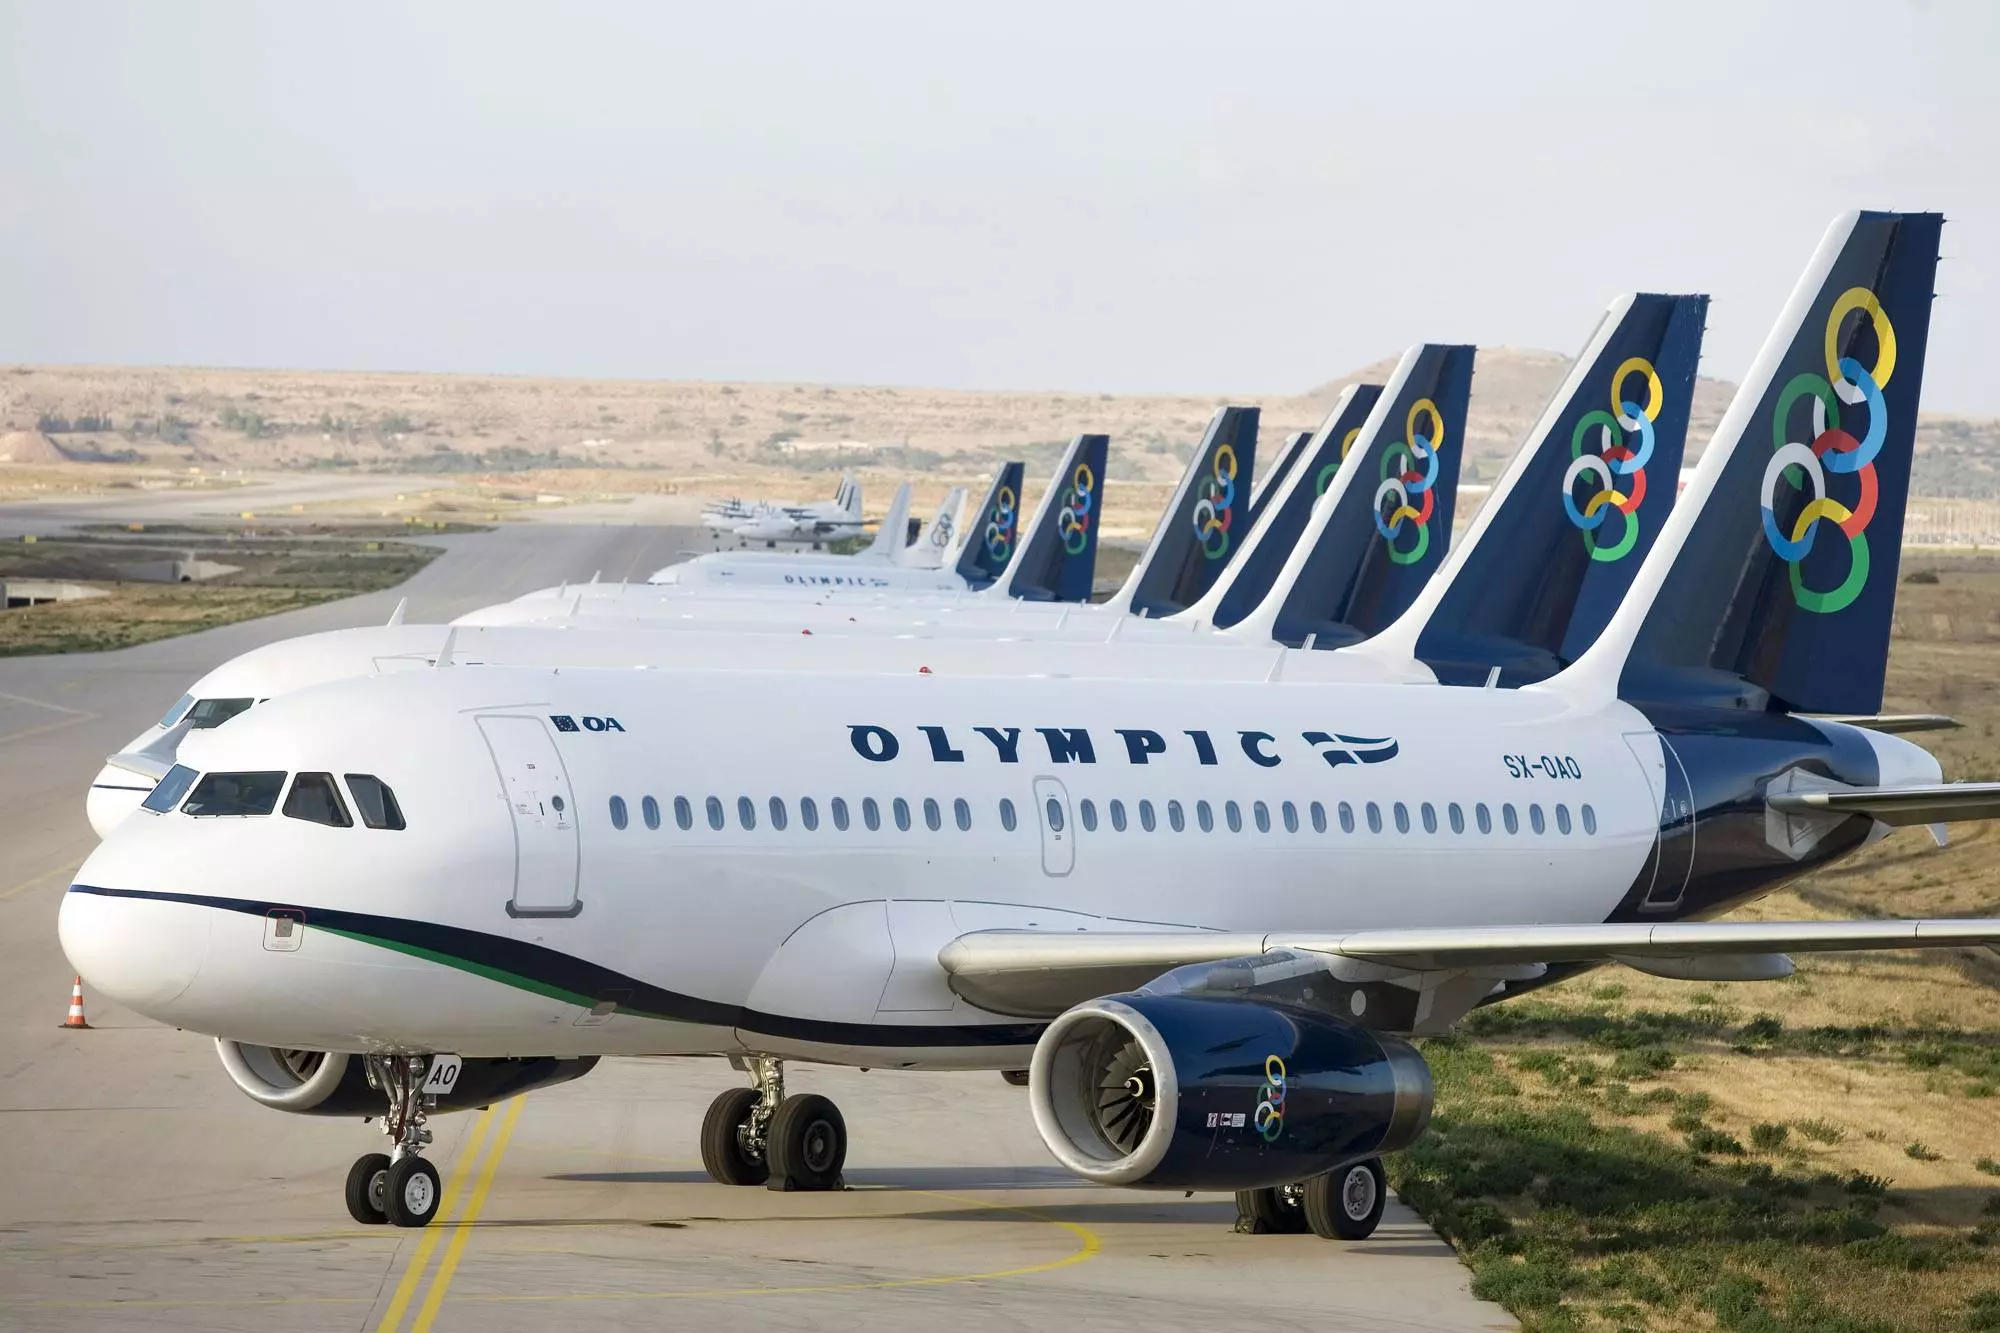 Olympic air (олимпик эйр): региональная авиакомпания греции, какие самолеты используются и куда летают, отзывы пассажиров